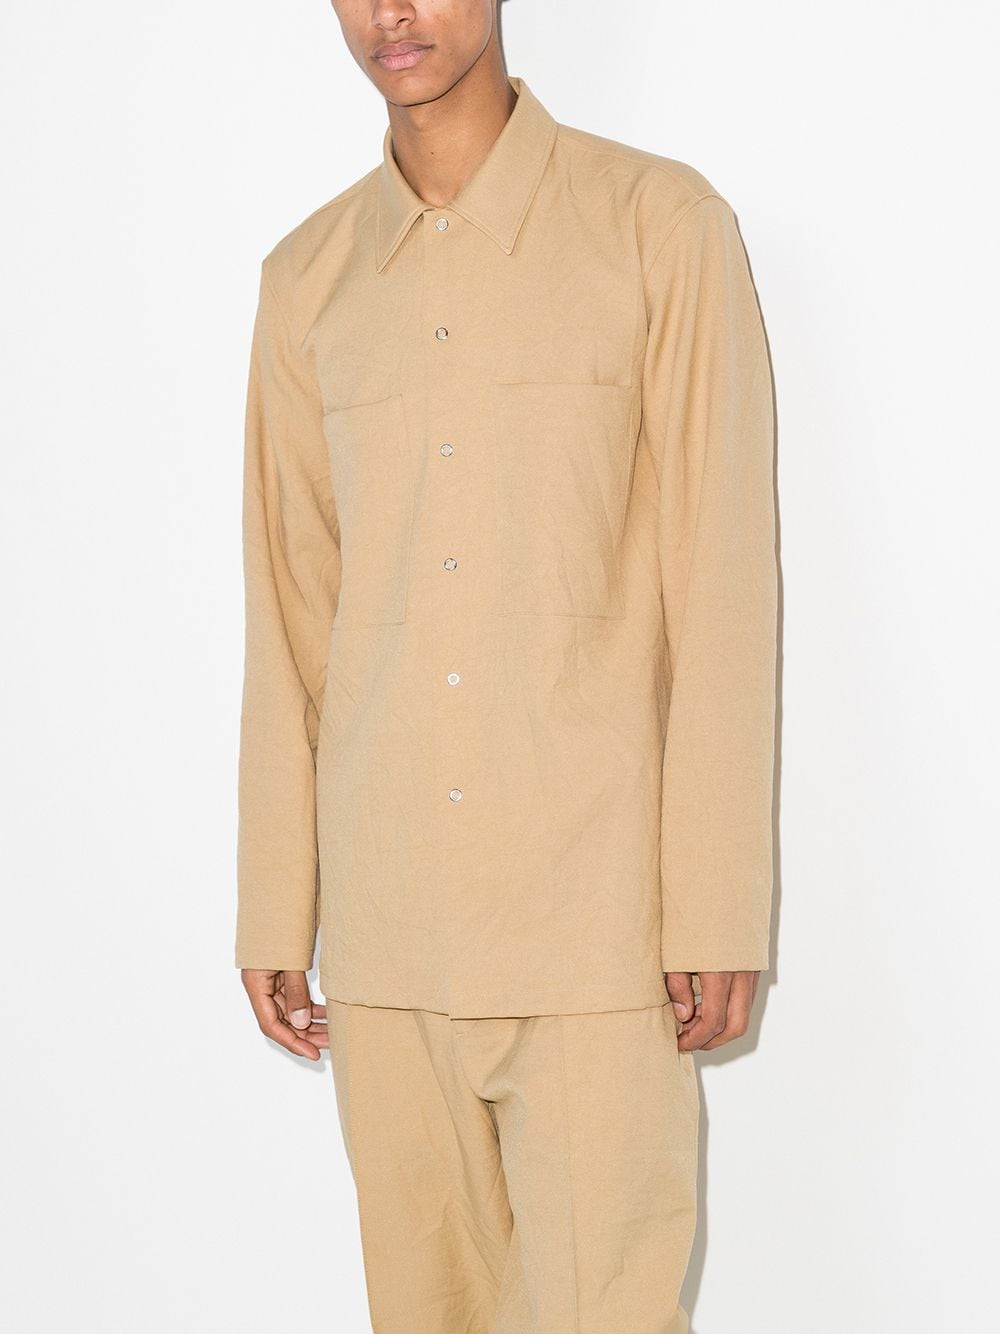 фото Jil sander рубашка с длинными рукавами и нагрудным карманом